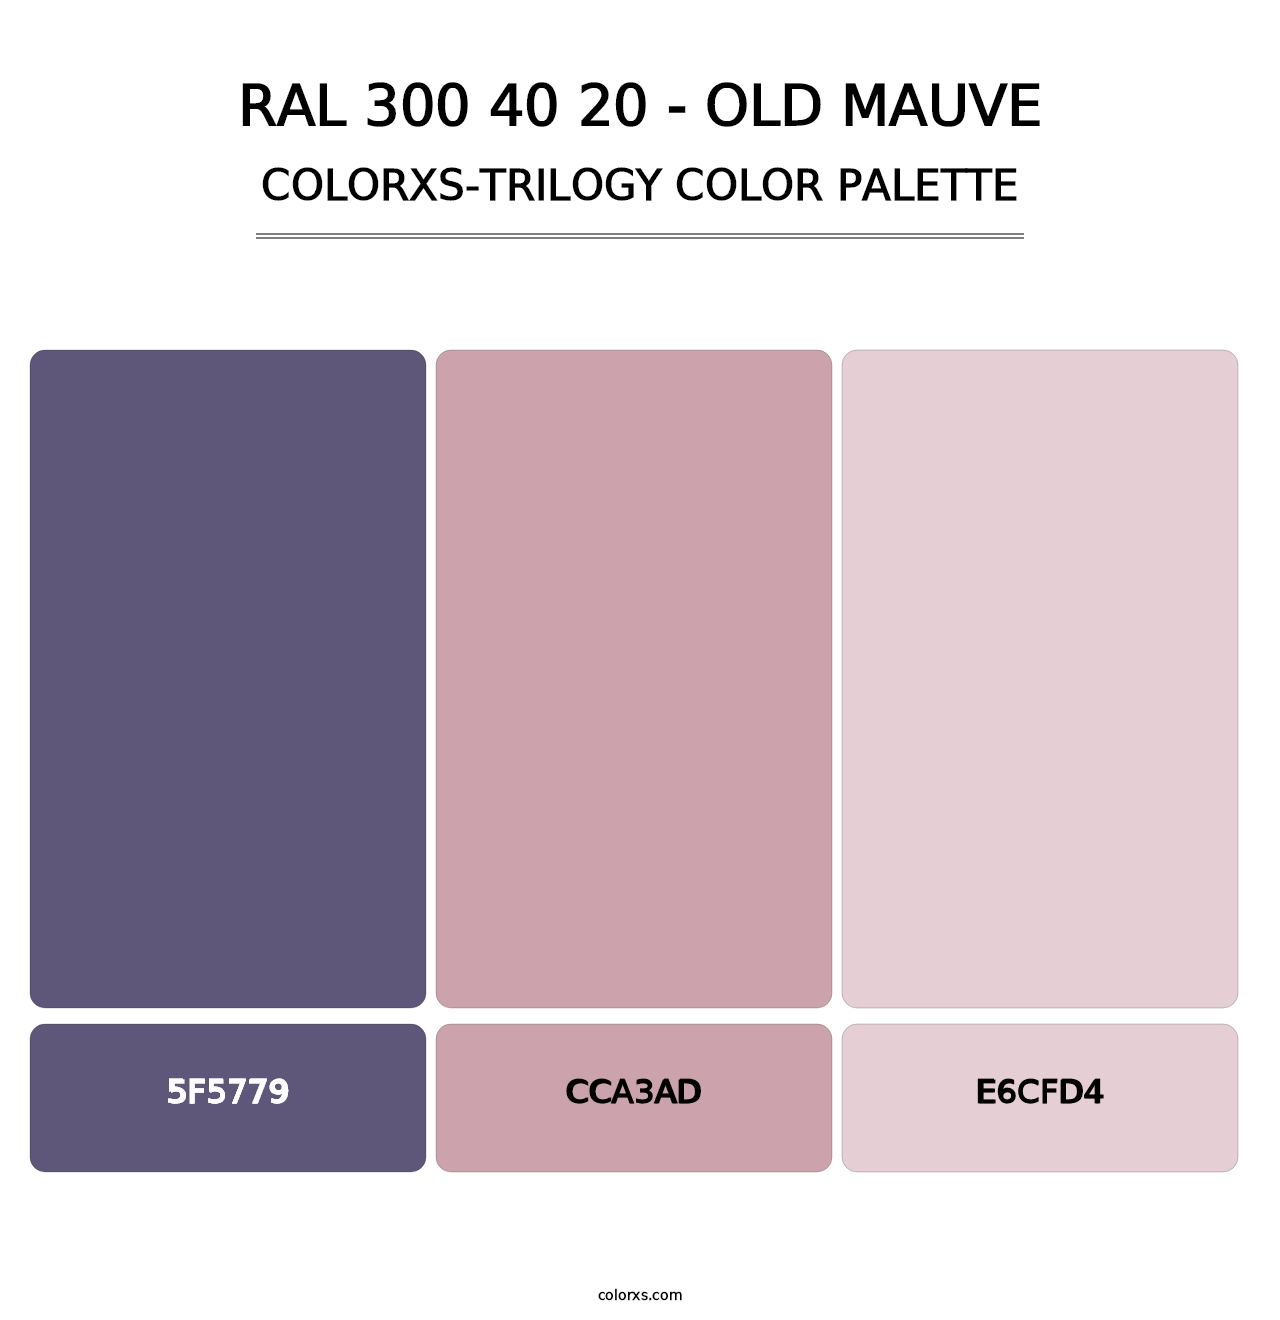 RAL 300 40 20 - Old Mauve - Colorxs Trilogy Palette